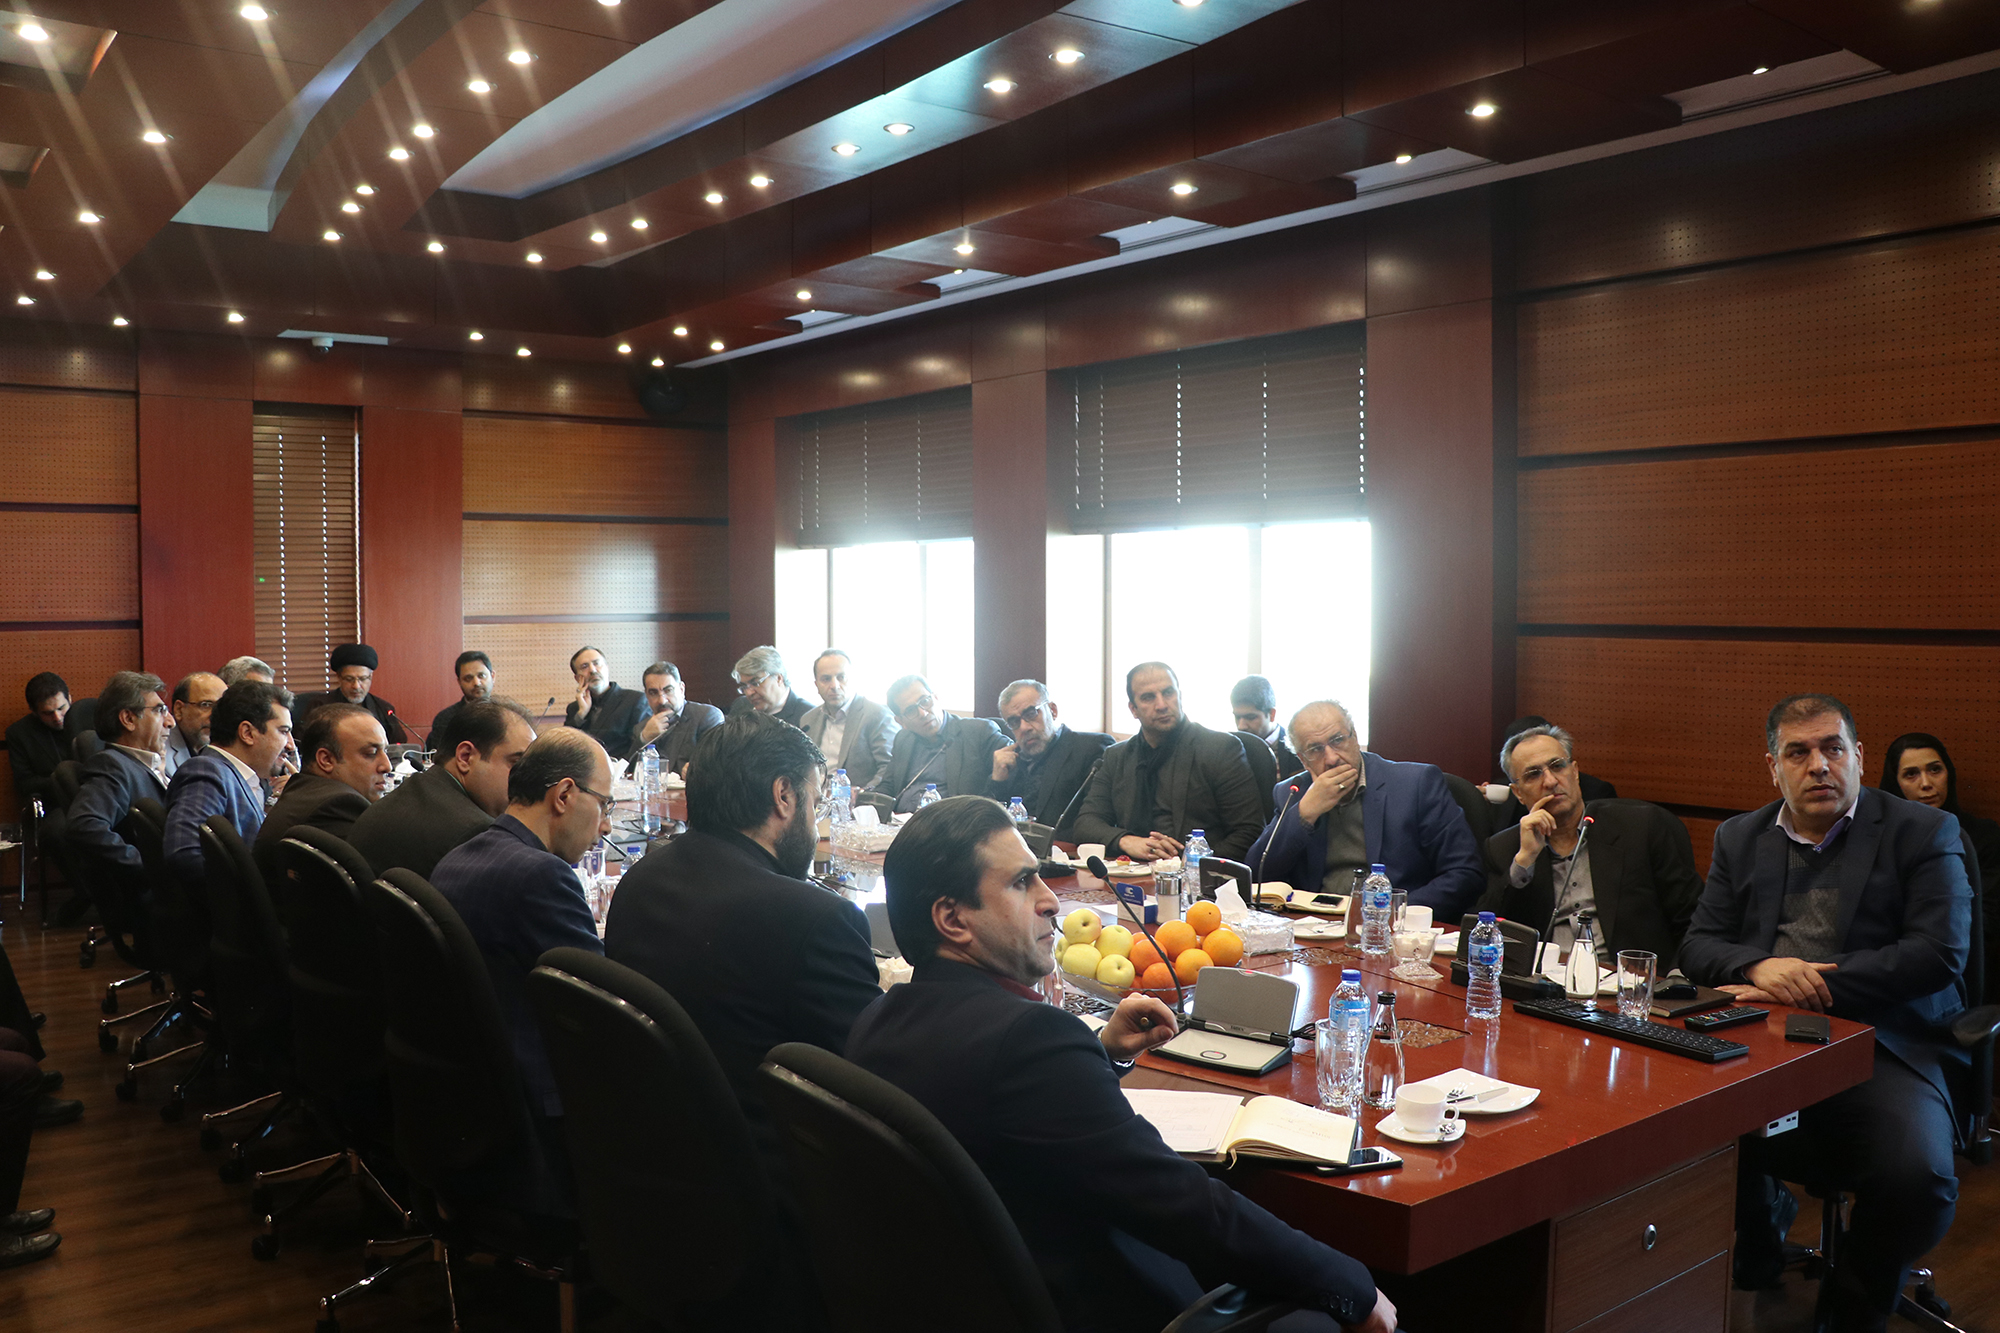 چهارمین جلسه کمیسیون فناوری و اقتصاد دانش بنیان به میزبانی کروز برگزار شد